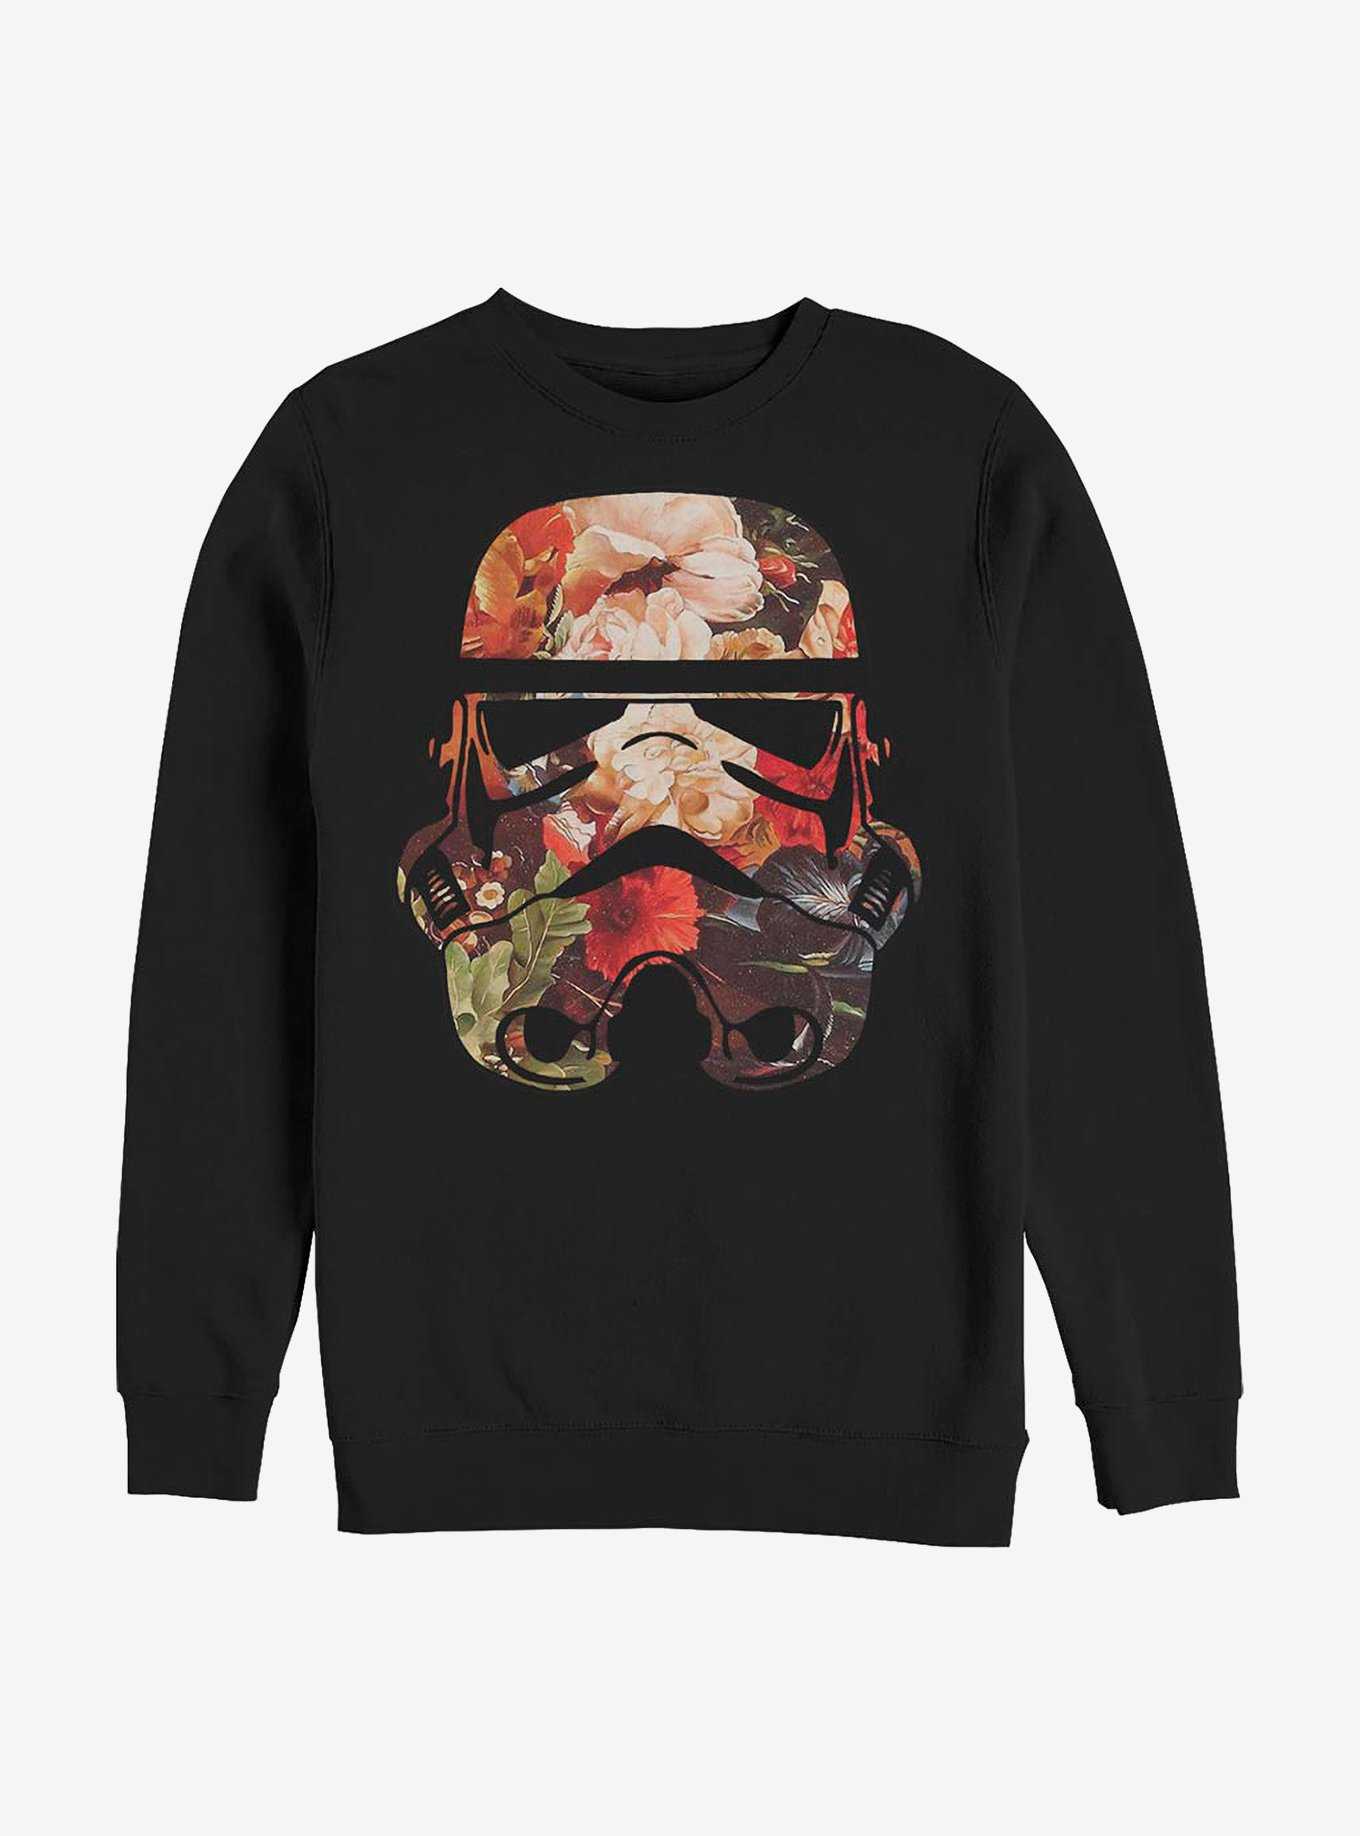 Star Wars Antique Trooper Crew Sweatshirt, , hi-res